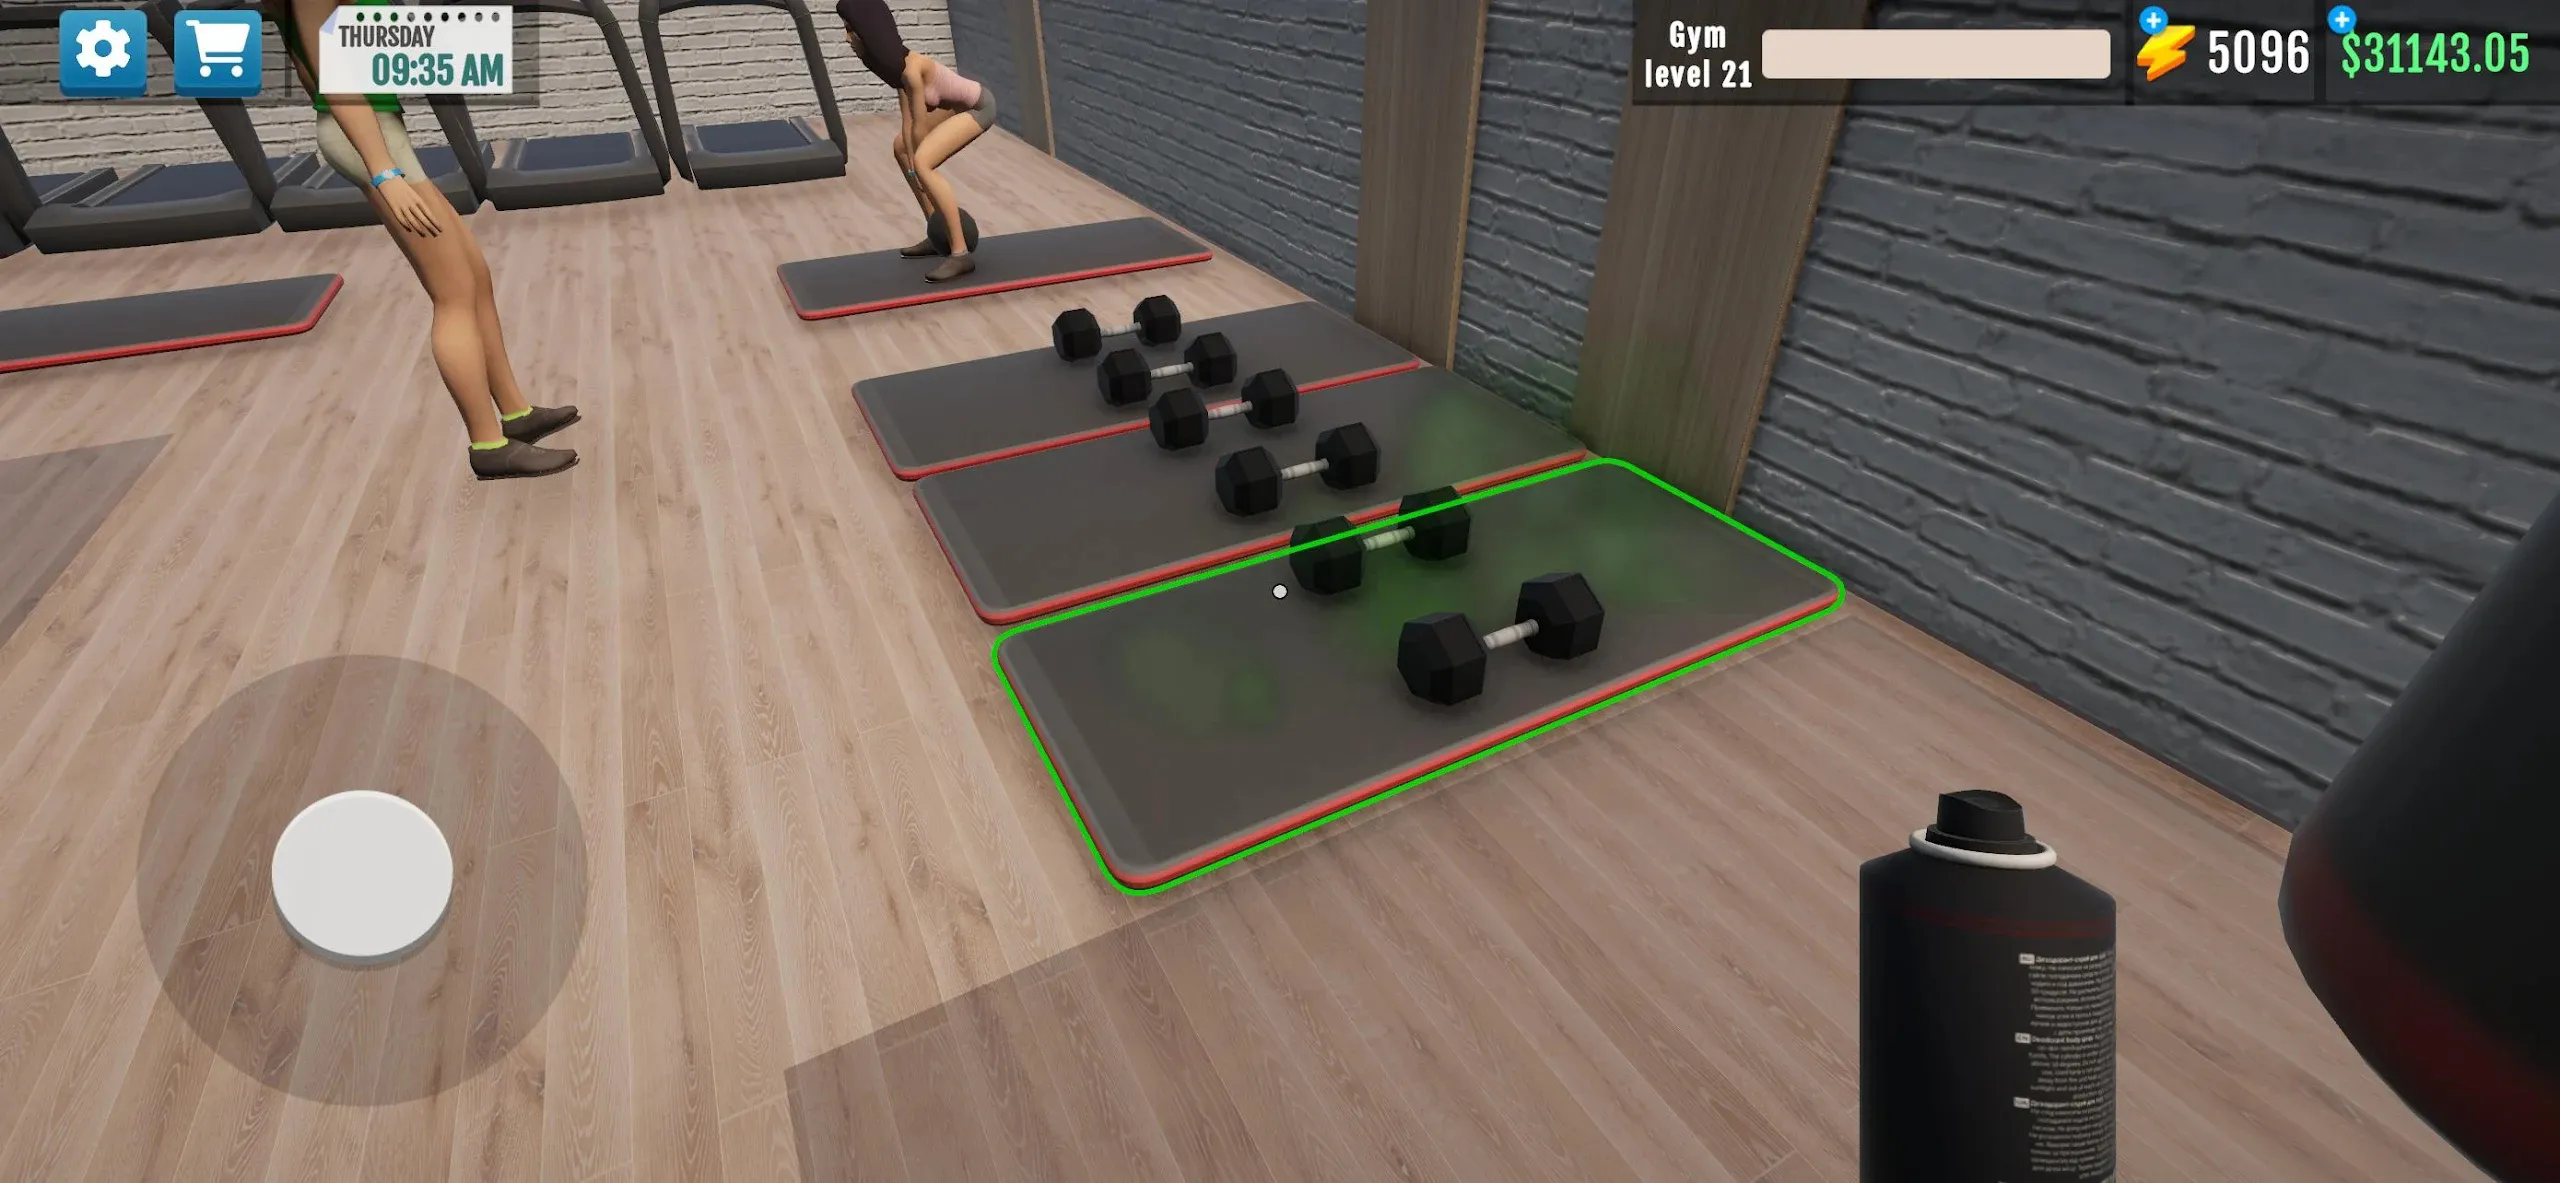 健身房模拟器3D截图3